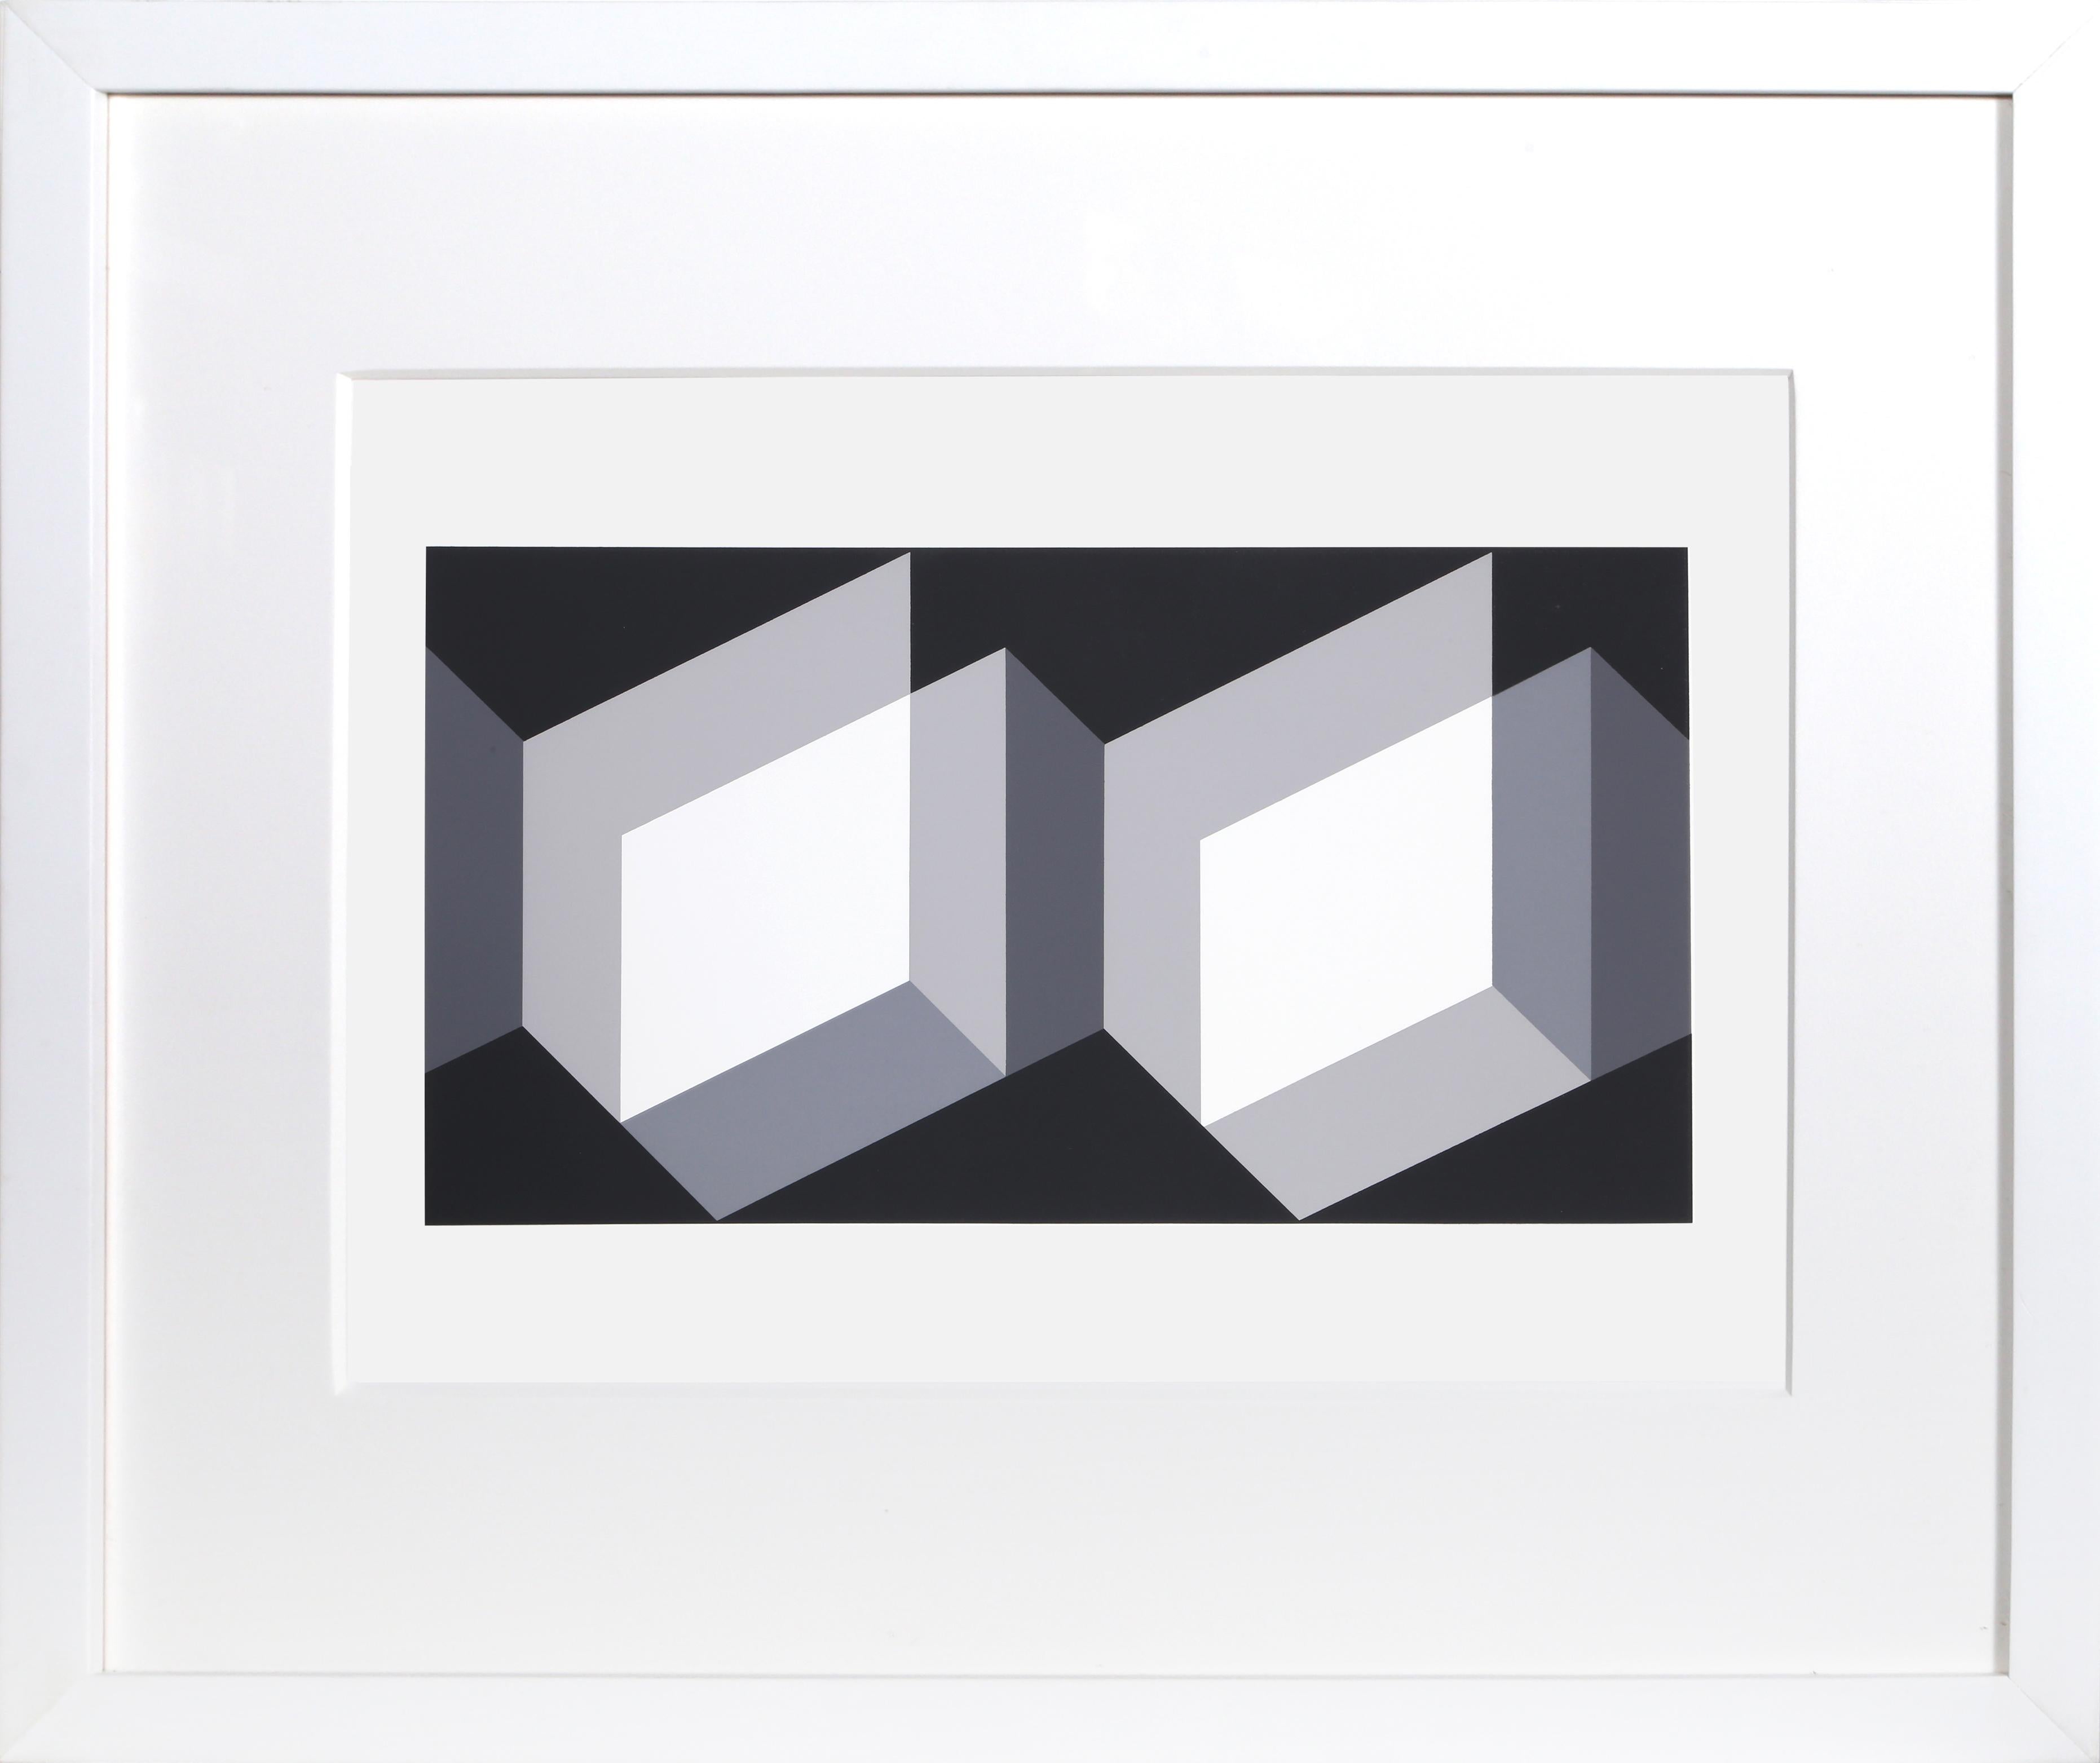 Biconjugate - P1, F27, I2, sérigraphie géométrique abstraite de Josef Albers